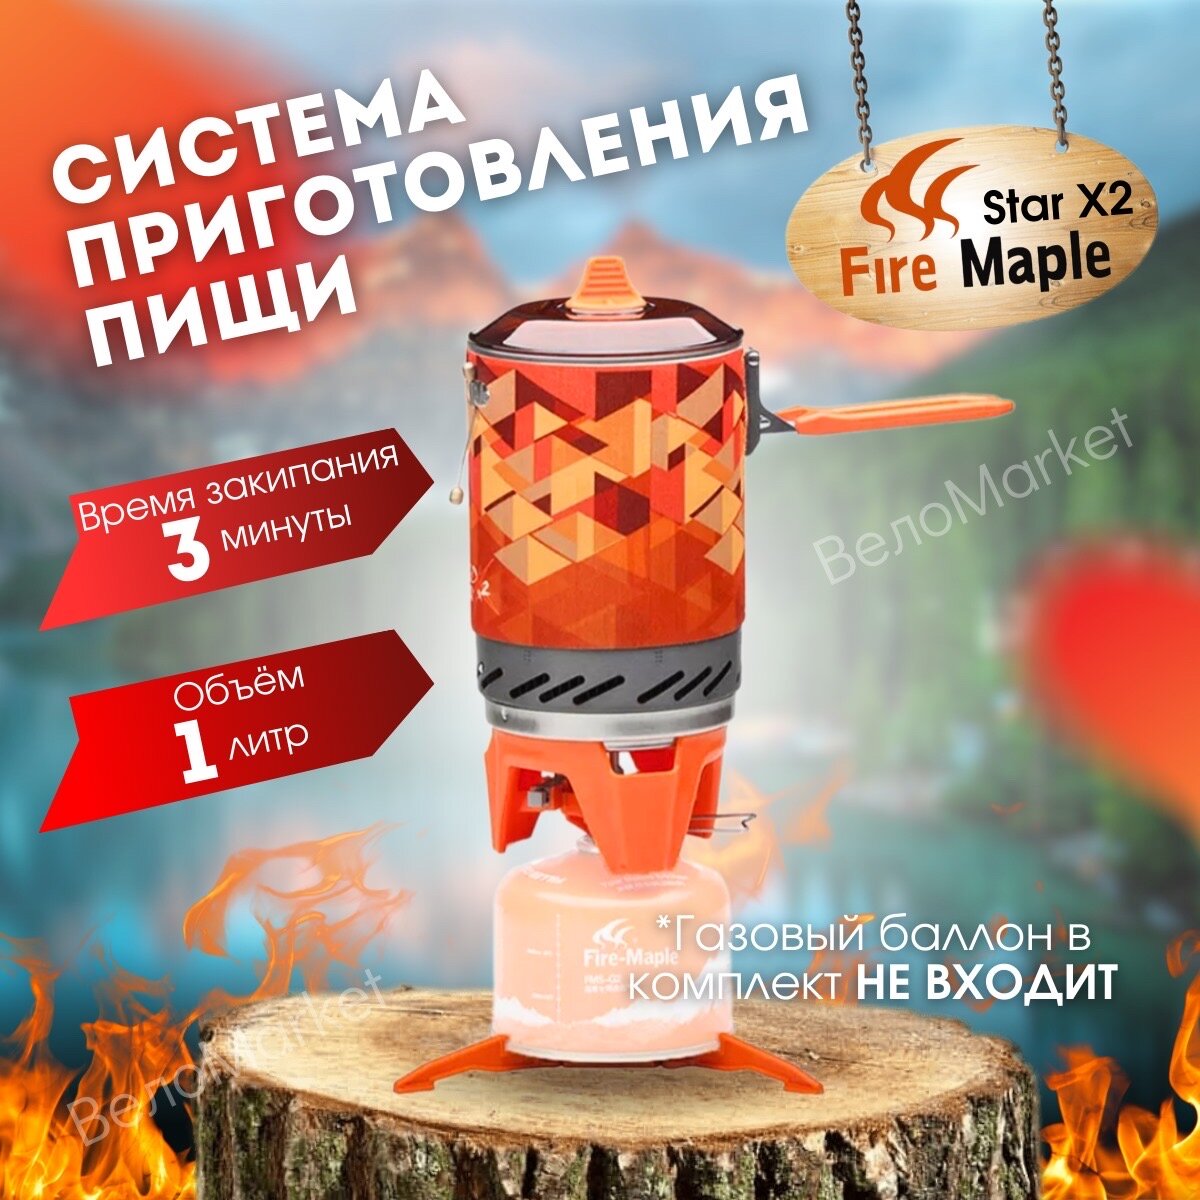 Газовая туристическая горелка Fire Maple X2 , система приготовления пищи